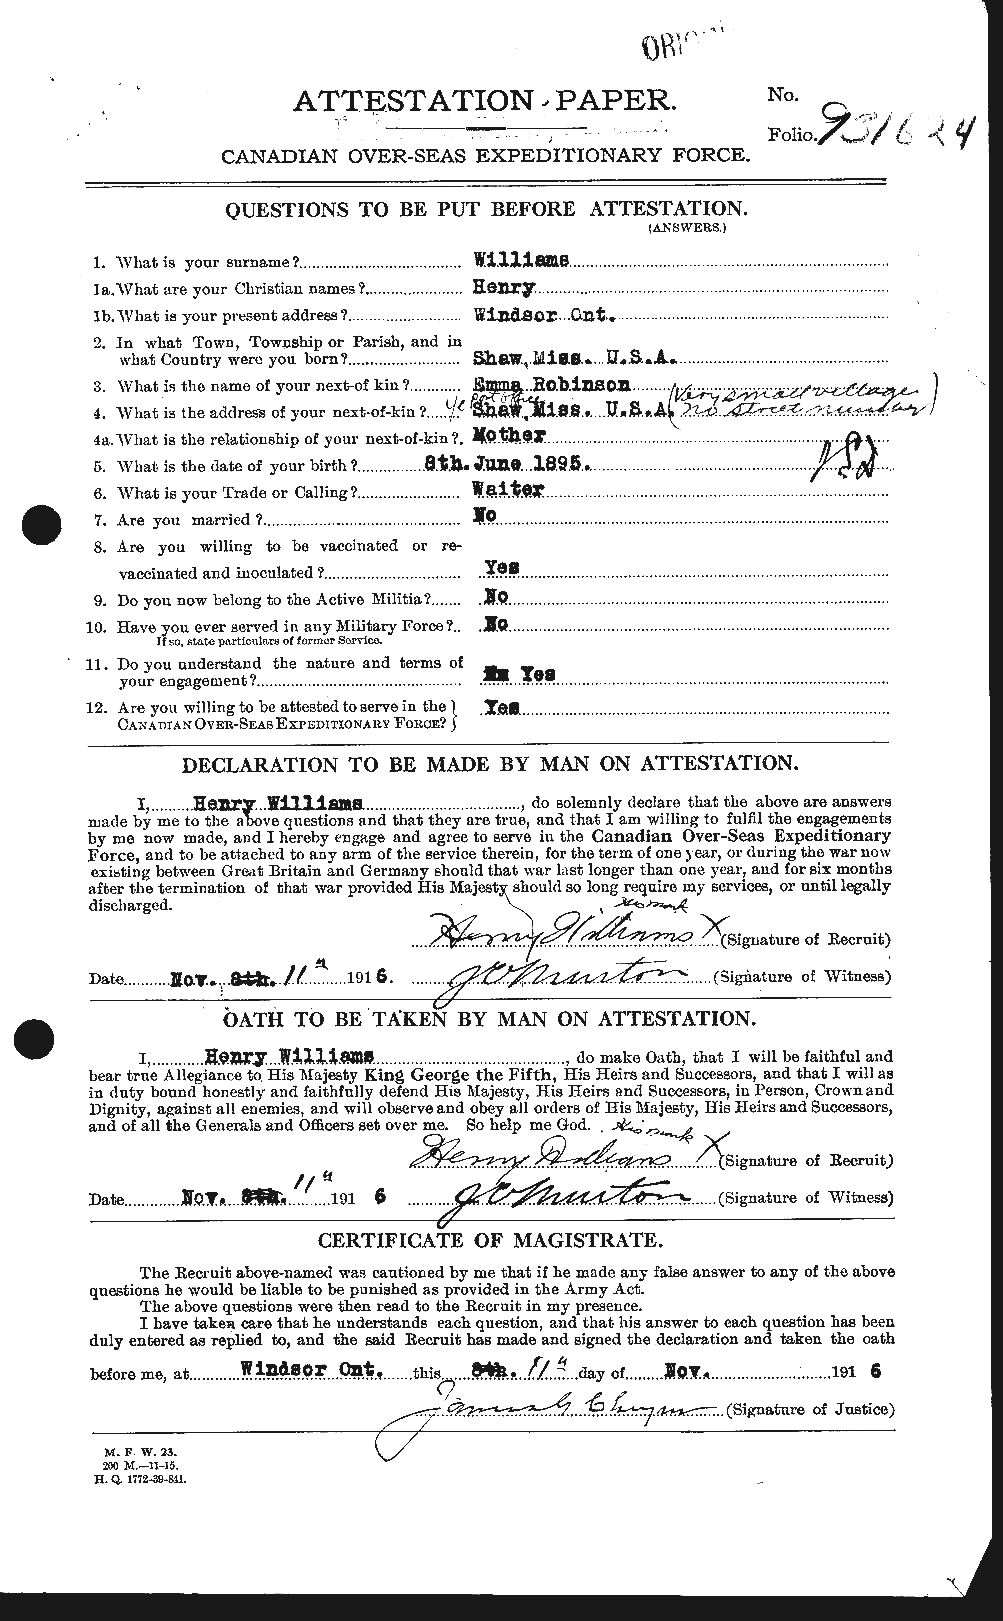 Dossiers du Personnel de la Première Guerre mondiale - CEC 677391a